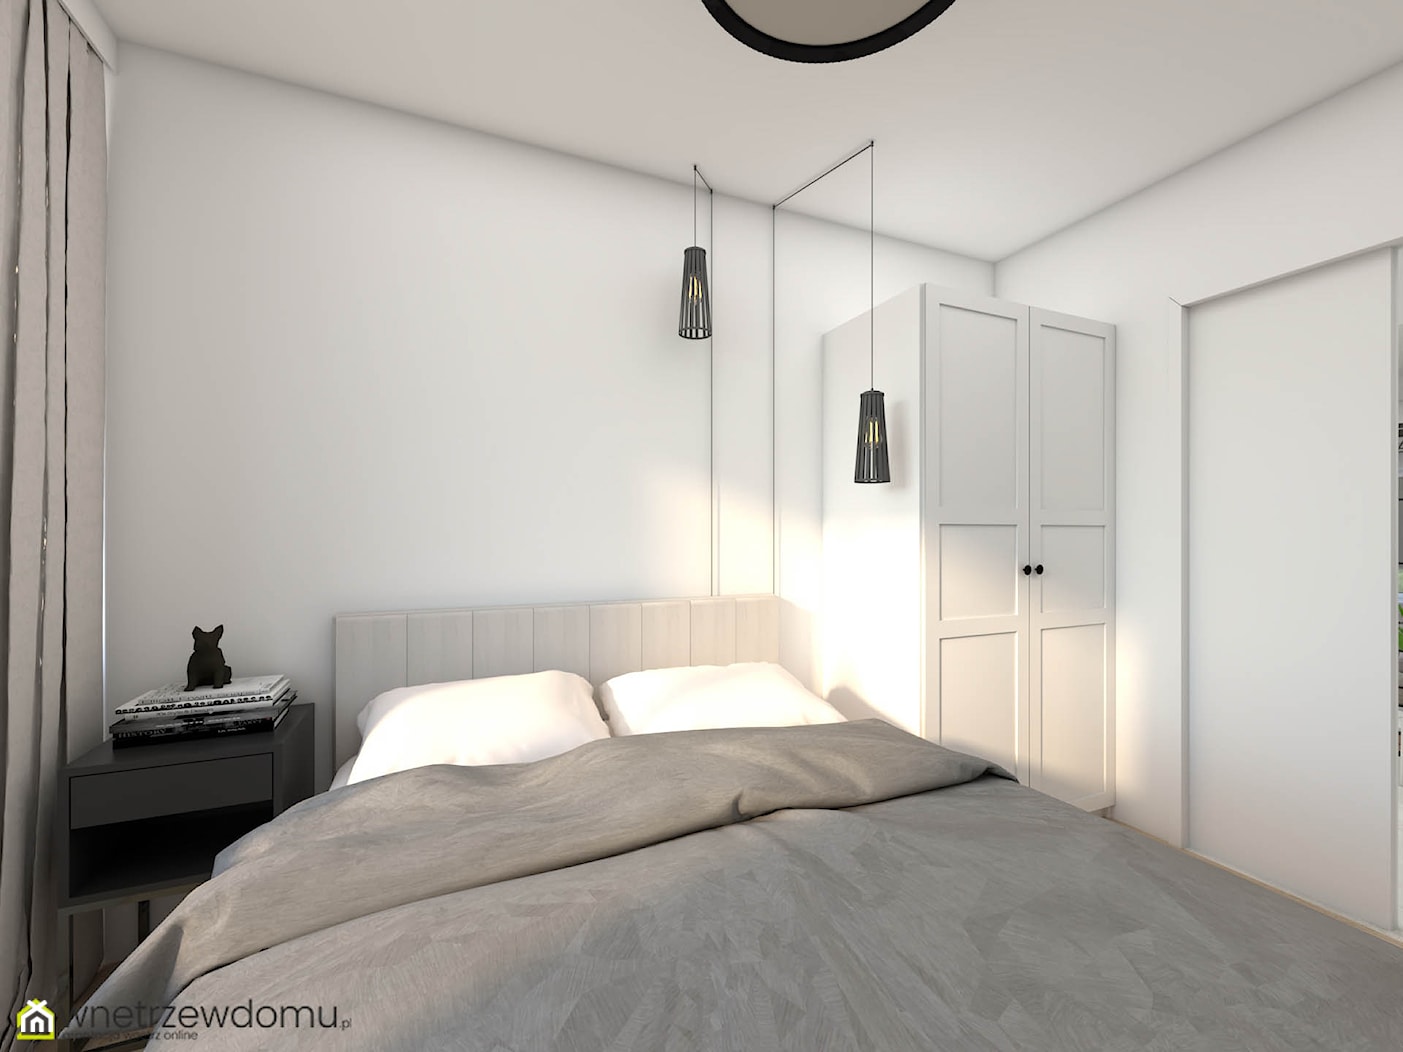 Minimalistyczna sypialnia dla gości - zdjęcie od wnetrzewdomu - Homebook